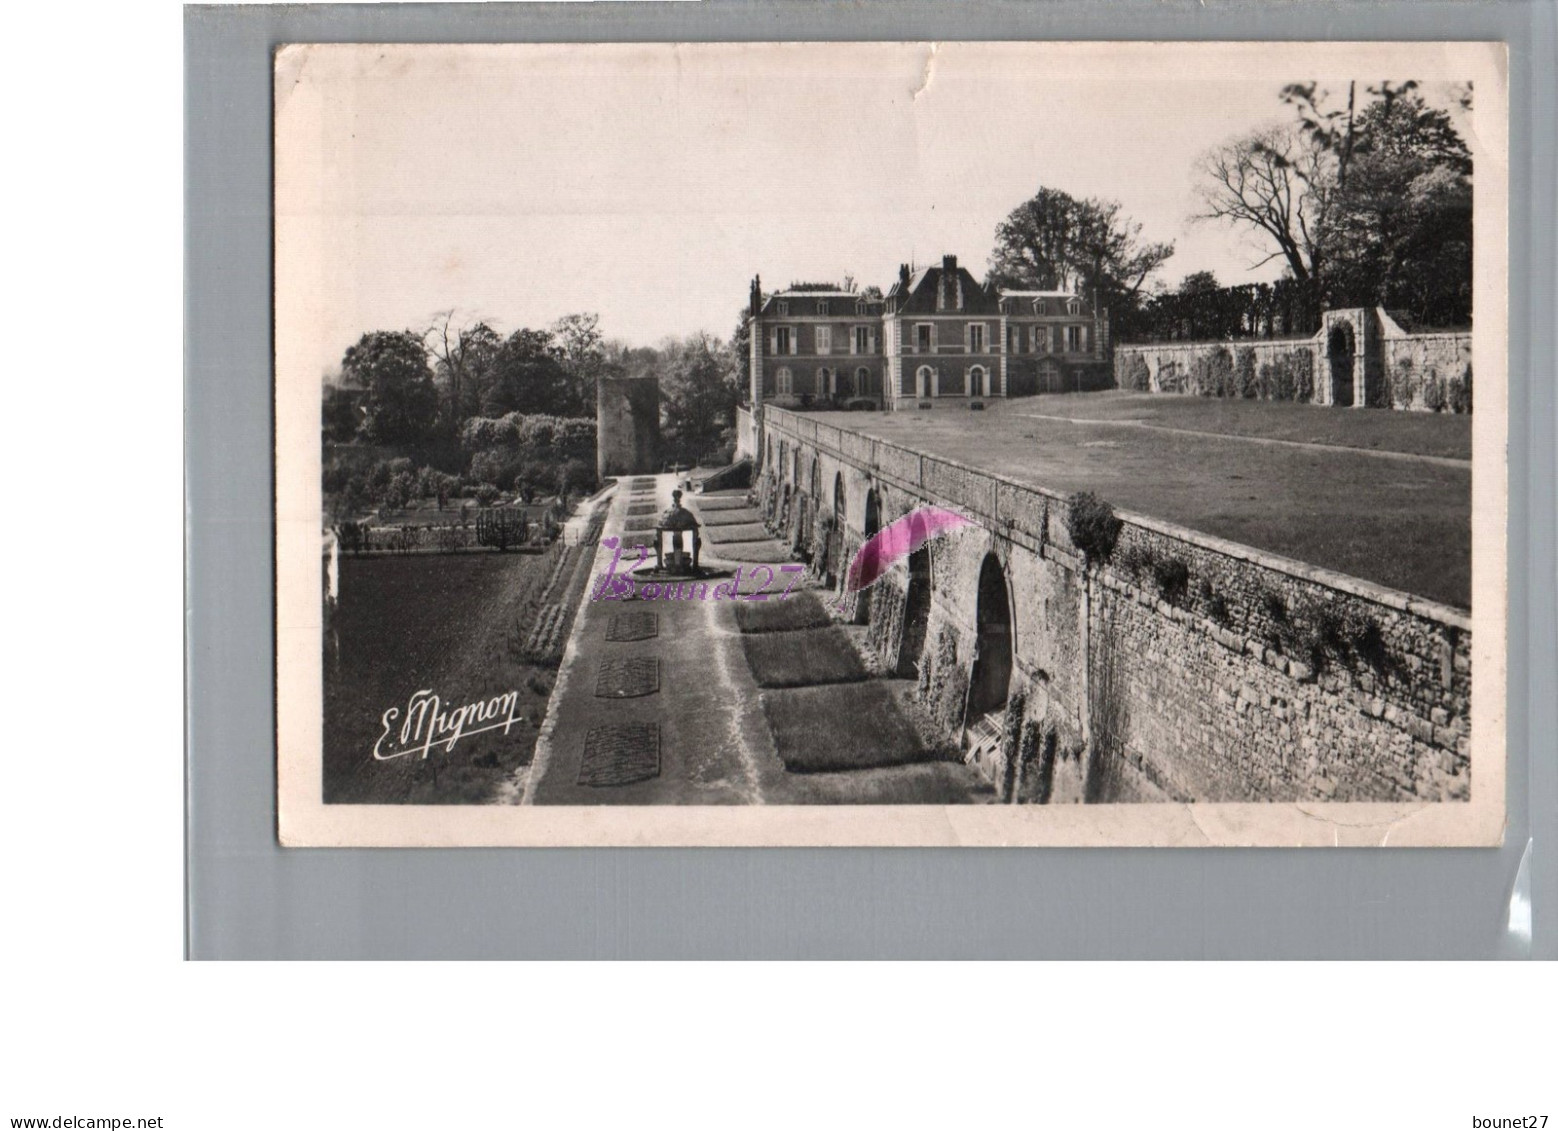 CPSM - CHATILLON COLIGNY 45 - Vue D'ensemble Du Château Les Trois Terrasses 1958 - Chatillon Coligny